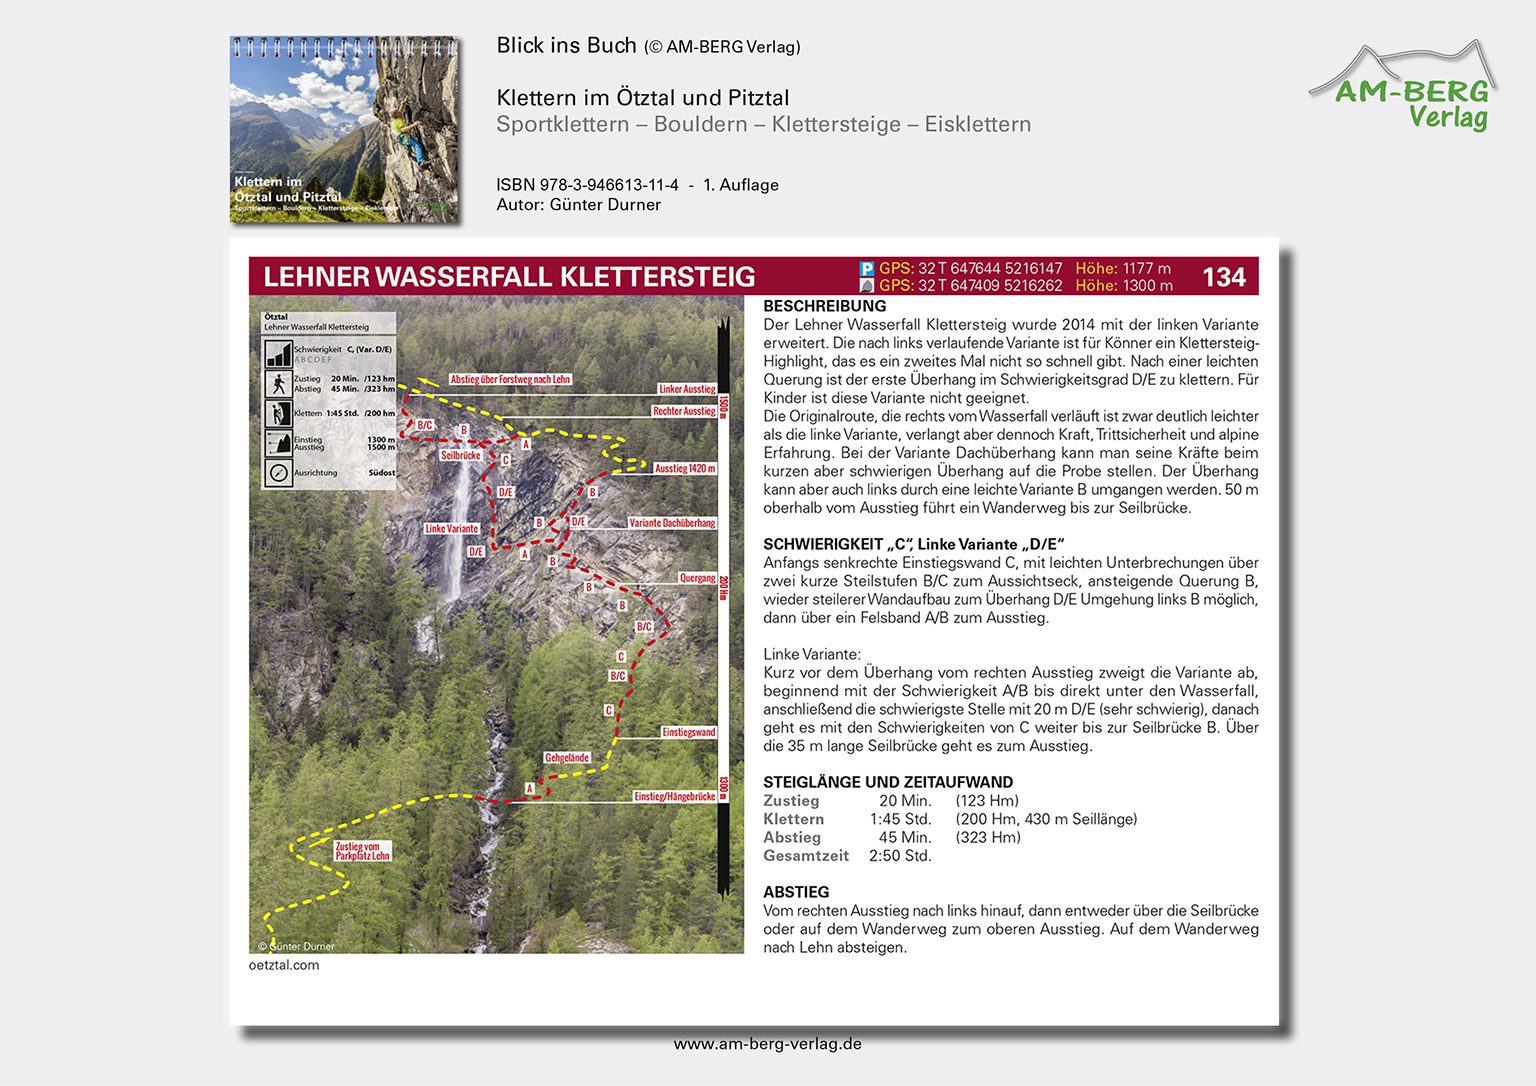 Klettern im Ötztal und Pitztal-Blick ins Buch08_Lehner Wasserfall Klettersteig